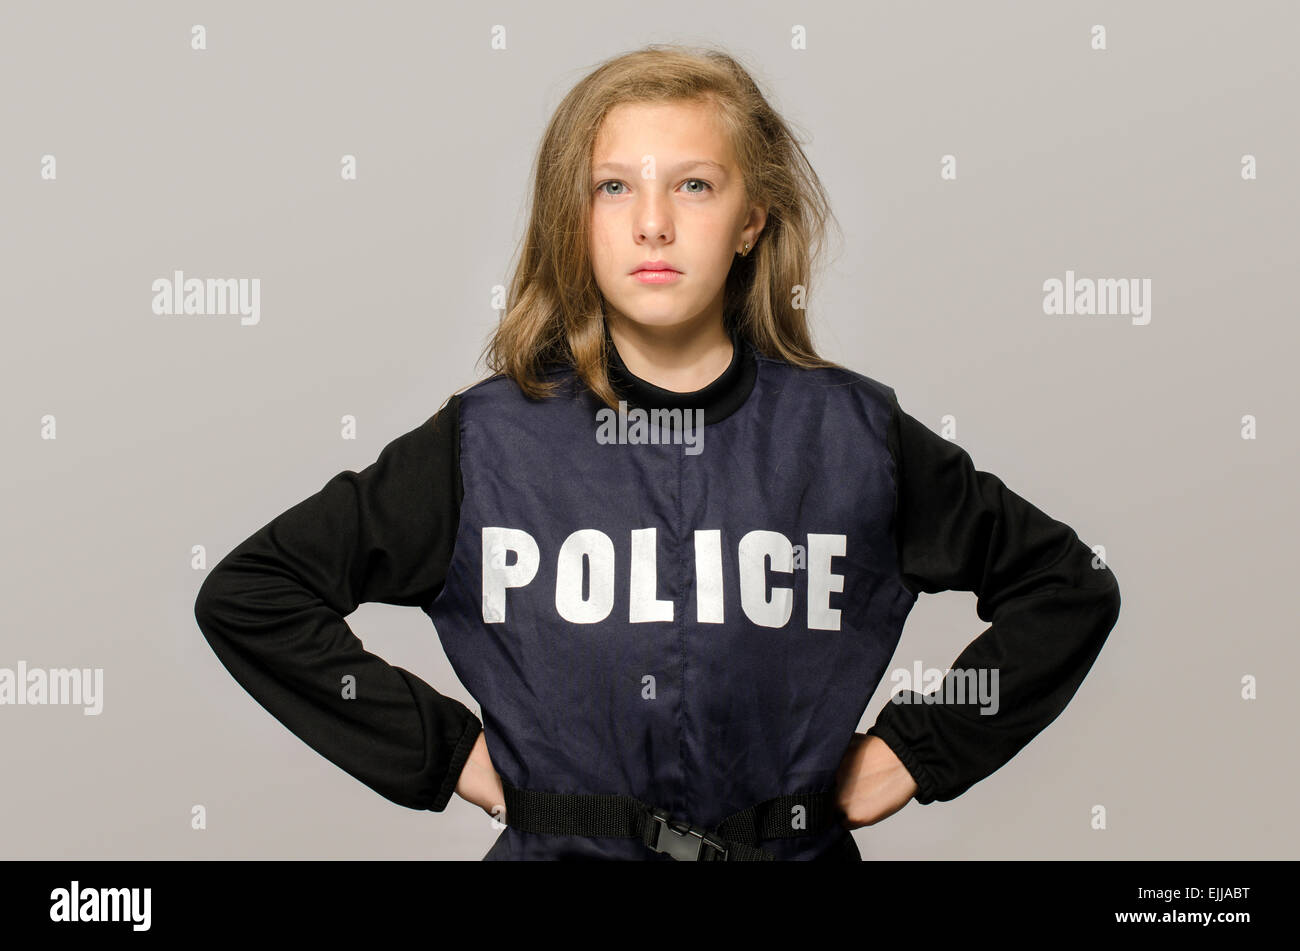 Kleine blonde Mädchen sagen Stop zu häuslicher Gewalt. Kind mit einer Polizei-Jacke verärgert protestieren gegen Eltern Brutalität Stockfoto